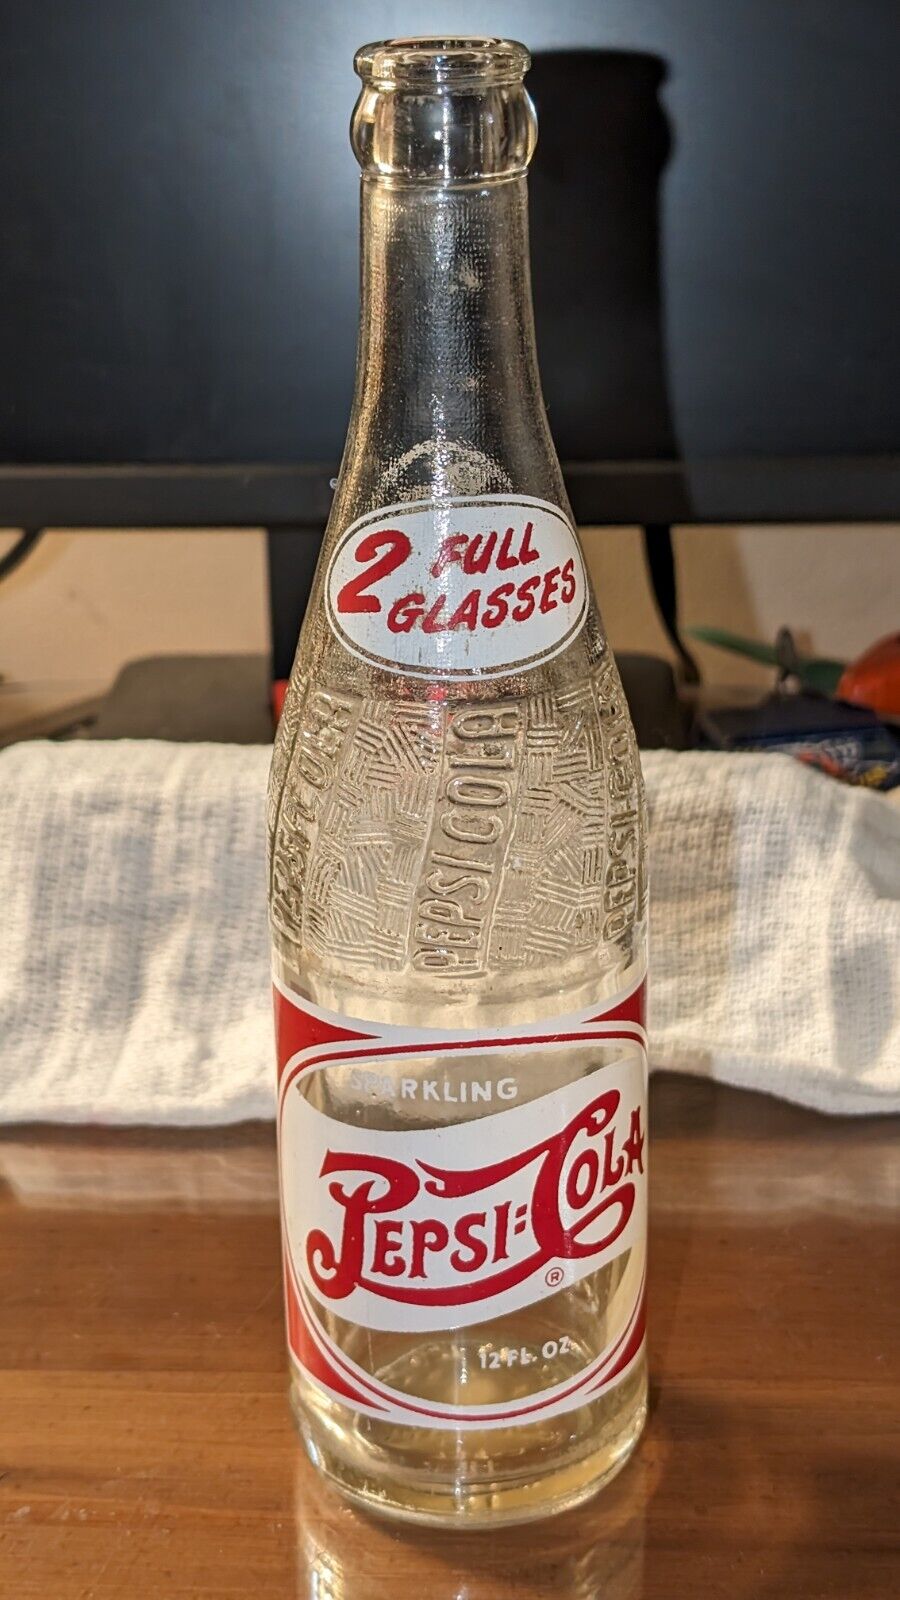 Vintage Pespi-Cola Glass Bottle 2 Full Glasses Duraglas